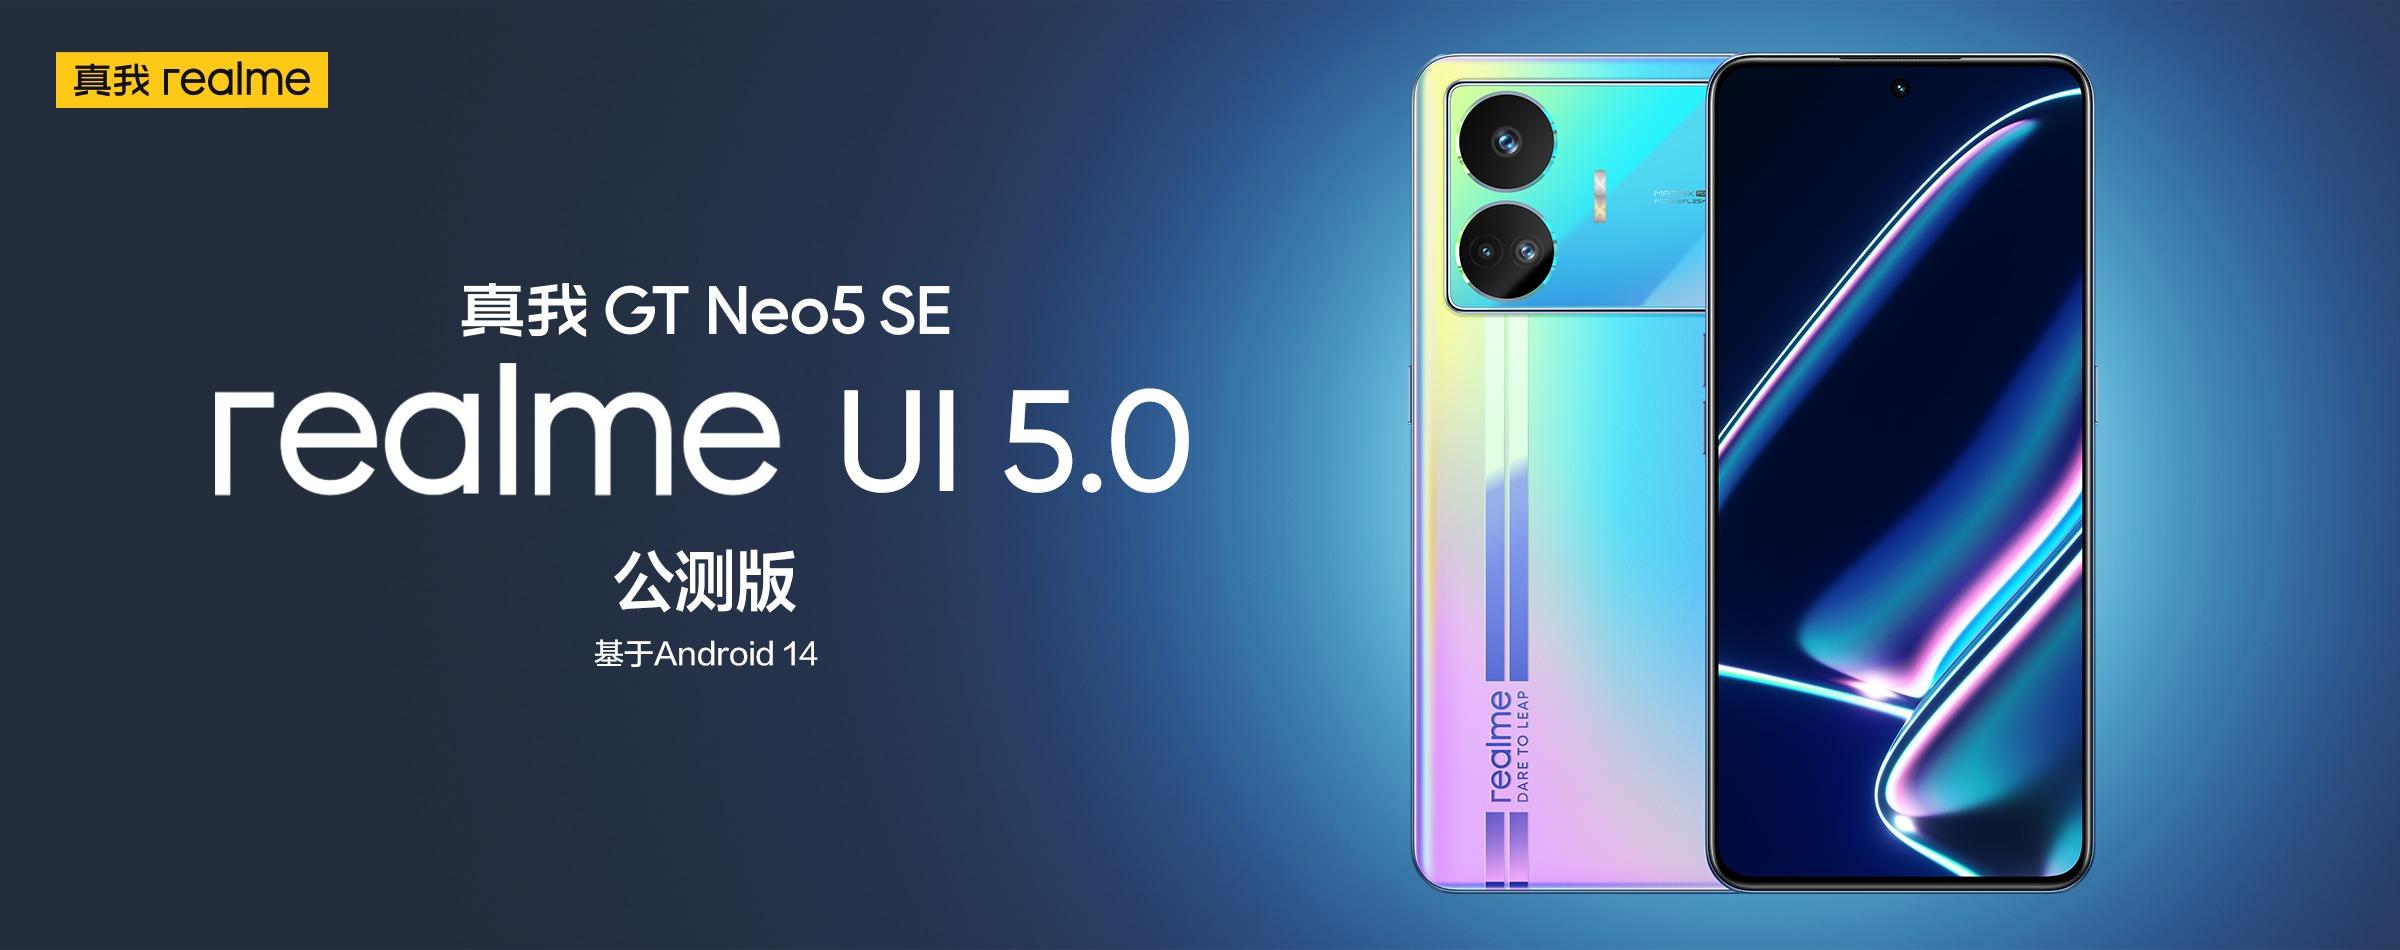 Das realme GT Neo 5 SE hat eine Beta-Version der realme UI 5.0 basierend auf Android 14 erhalten.